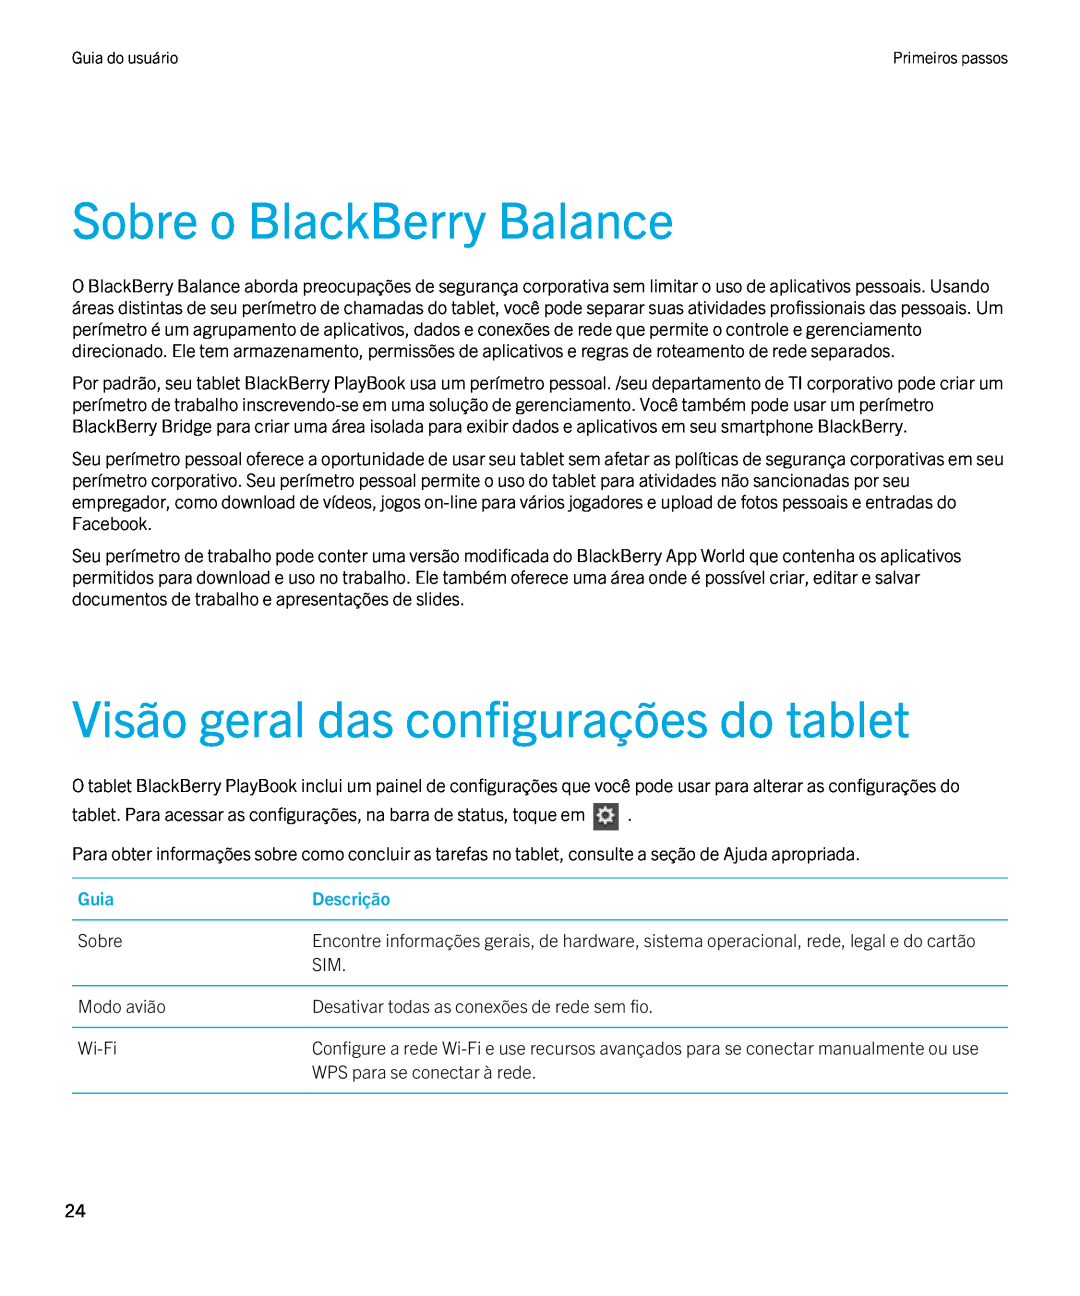 Blackberry 2.0.1 manual Sobre o BlackBerry Balance, Visão geral das configurações do tablet, Guia, Descrição 